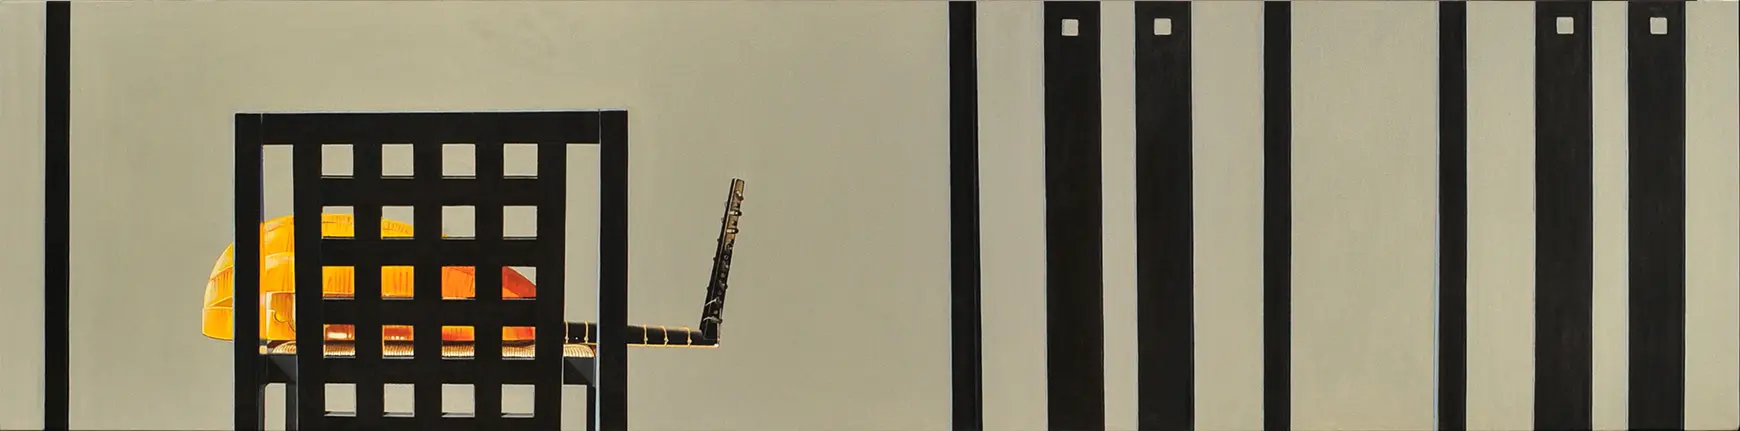 Lute fantasy for Ch. R. Macintosh 53 x 213 cm, Öl auf Leinwand (2006)